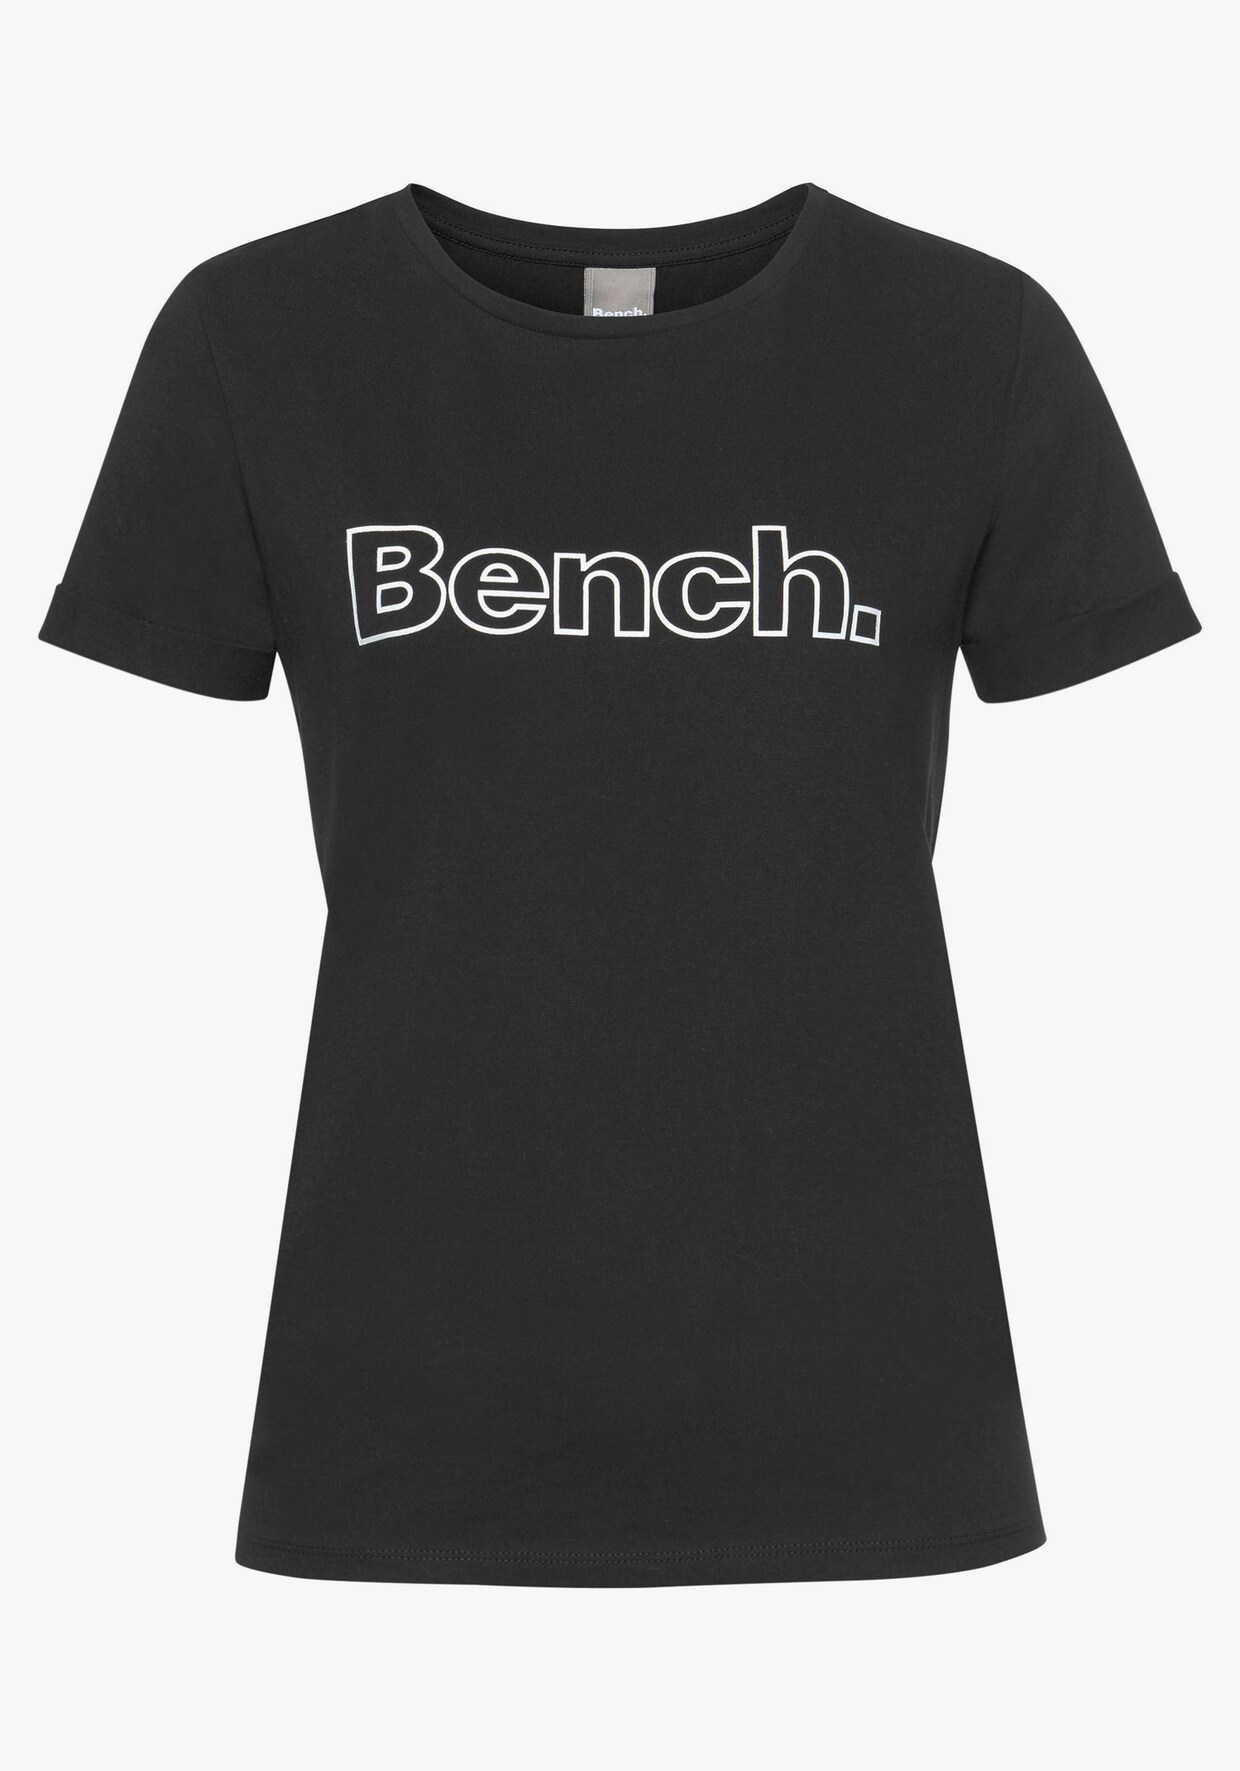 Bench. T-Shirt - 1x schwarz + 1x weiß